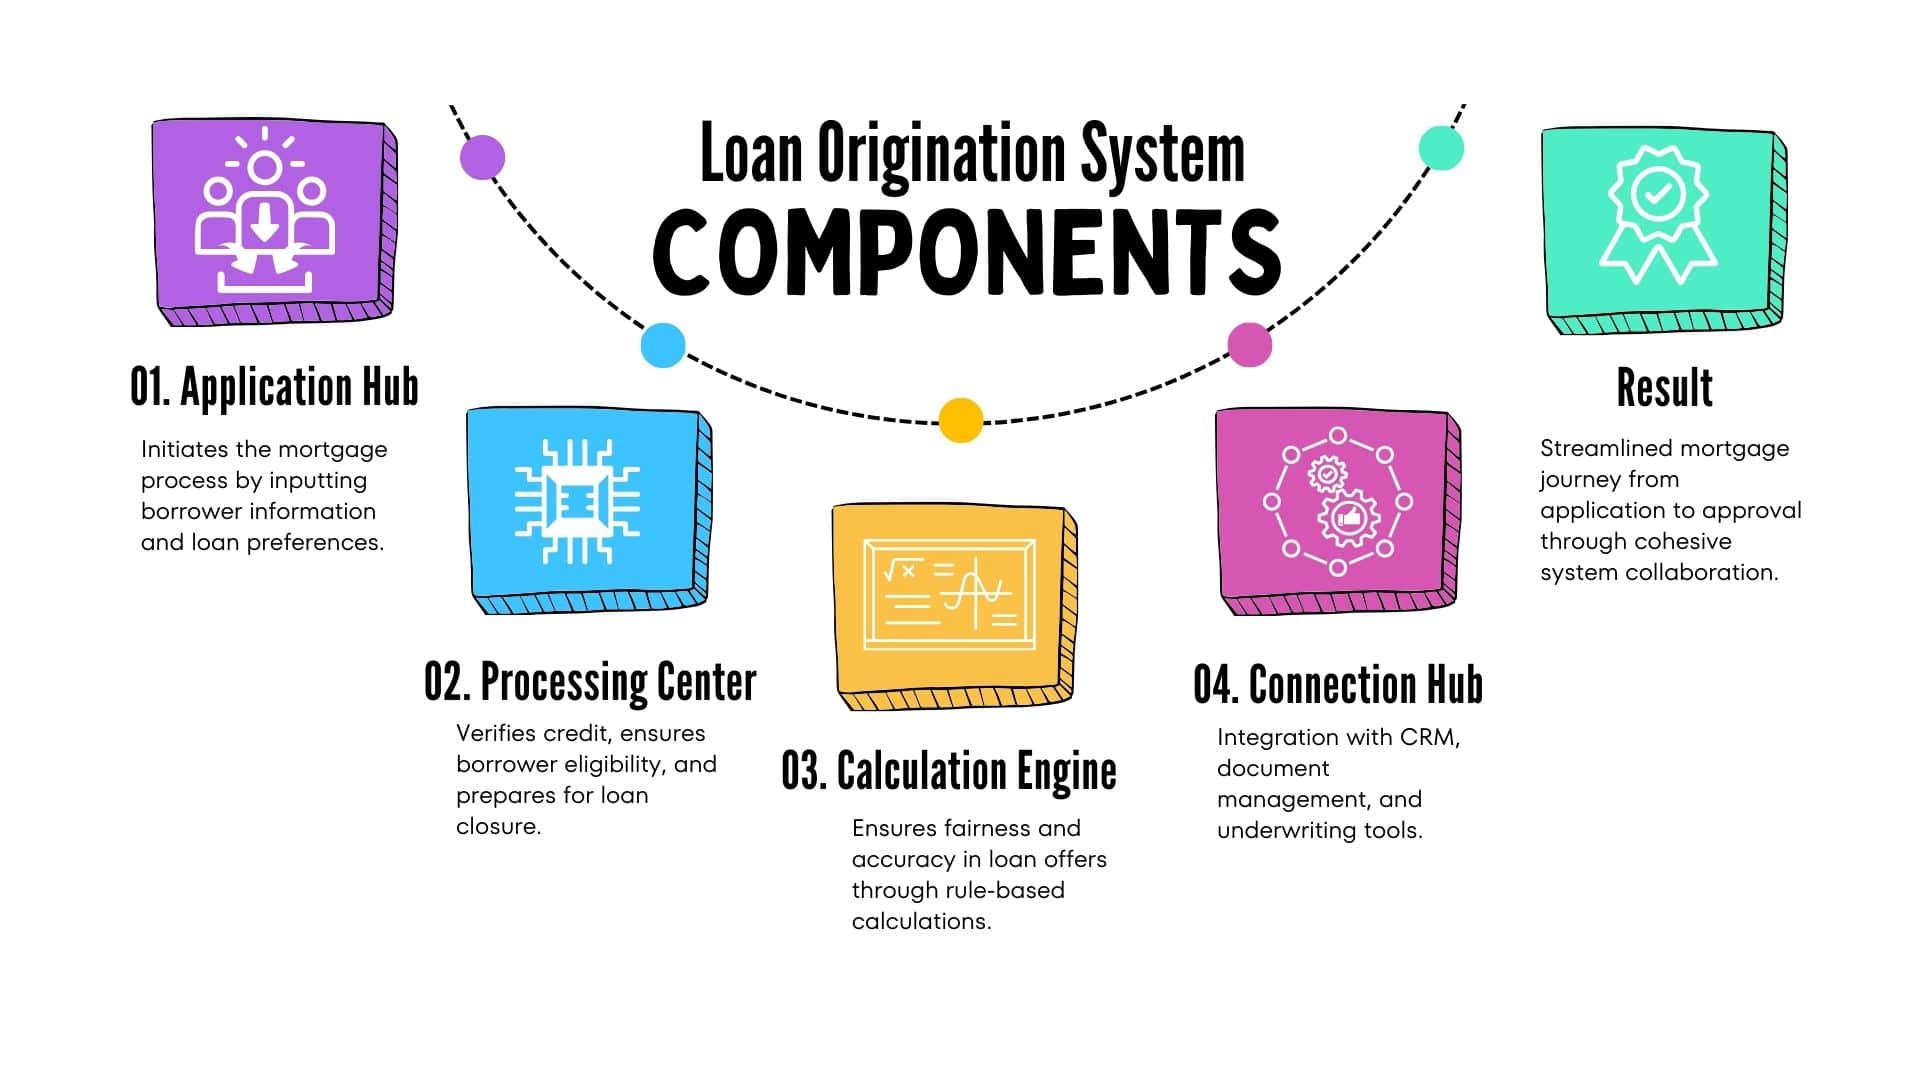 LOS Has 4 Essential Components 
